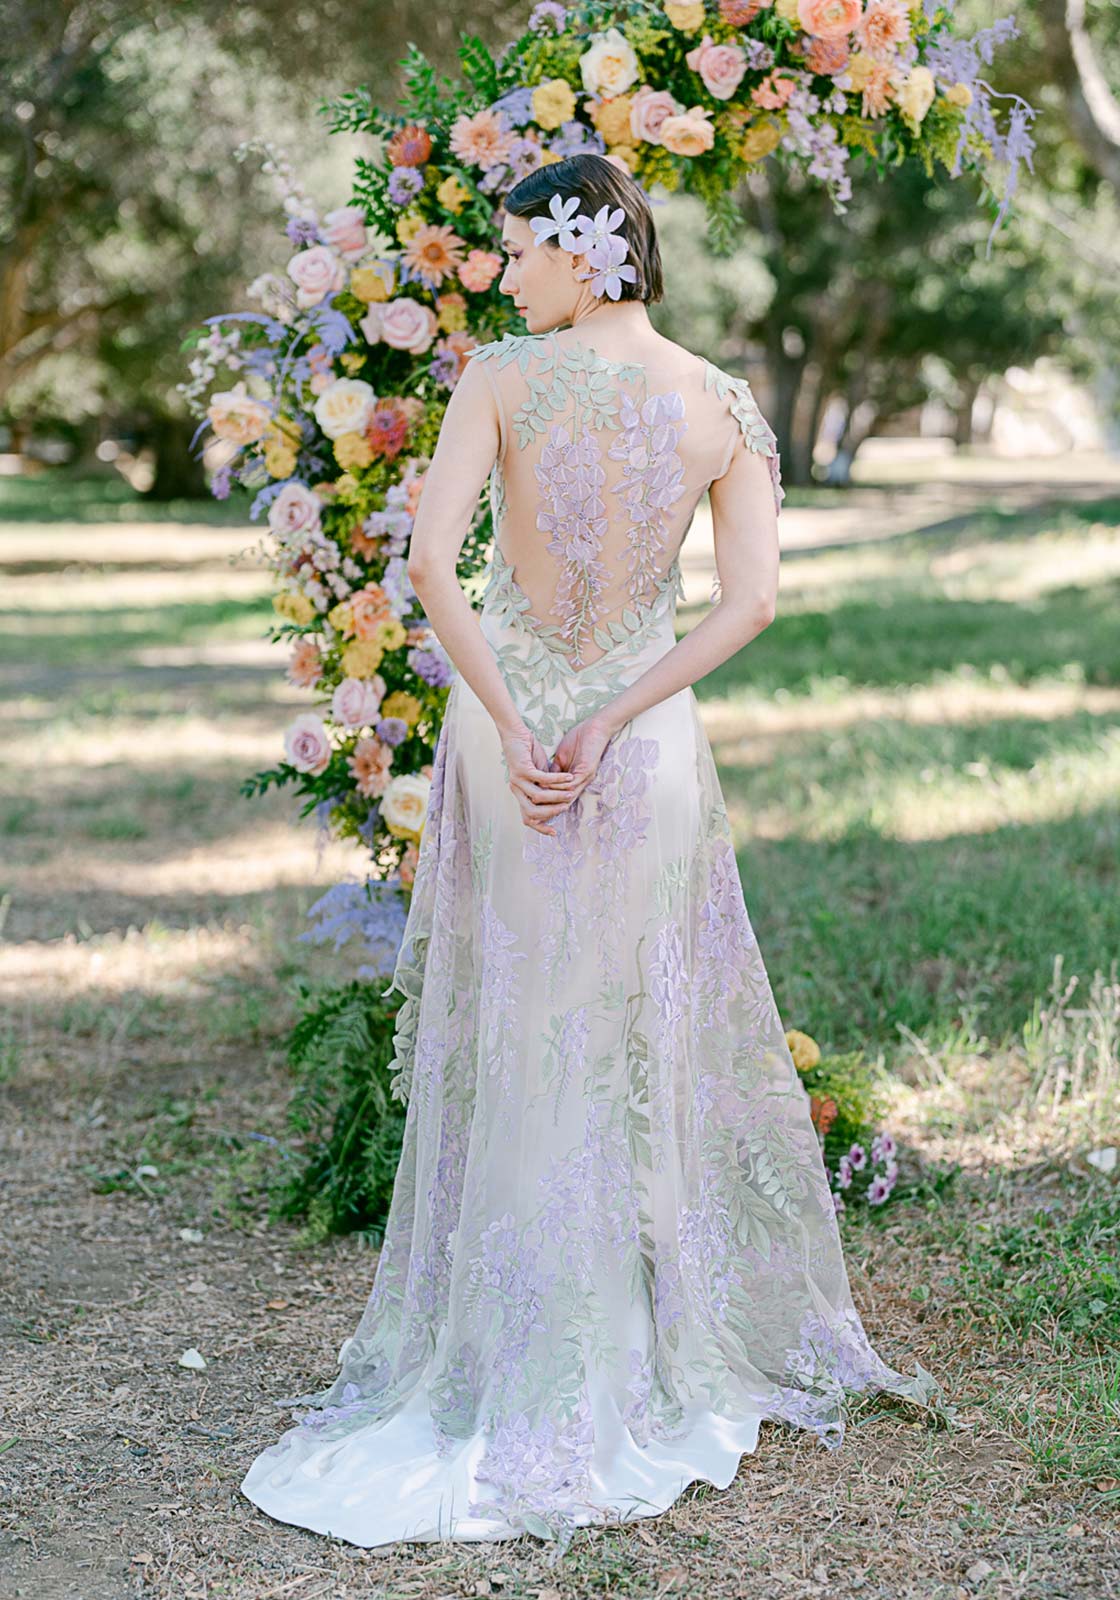 Wisteria Wedding Dress by Claire Pettibone